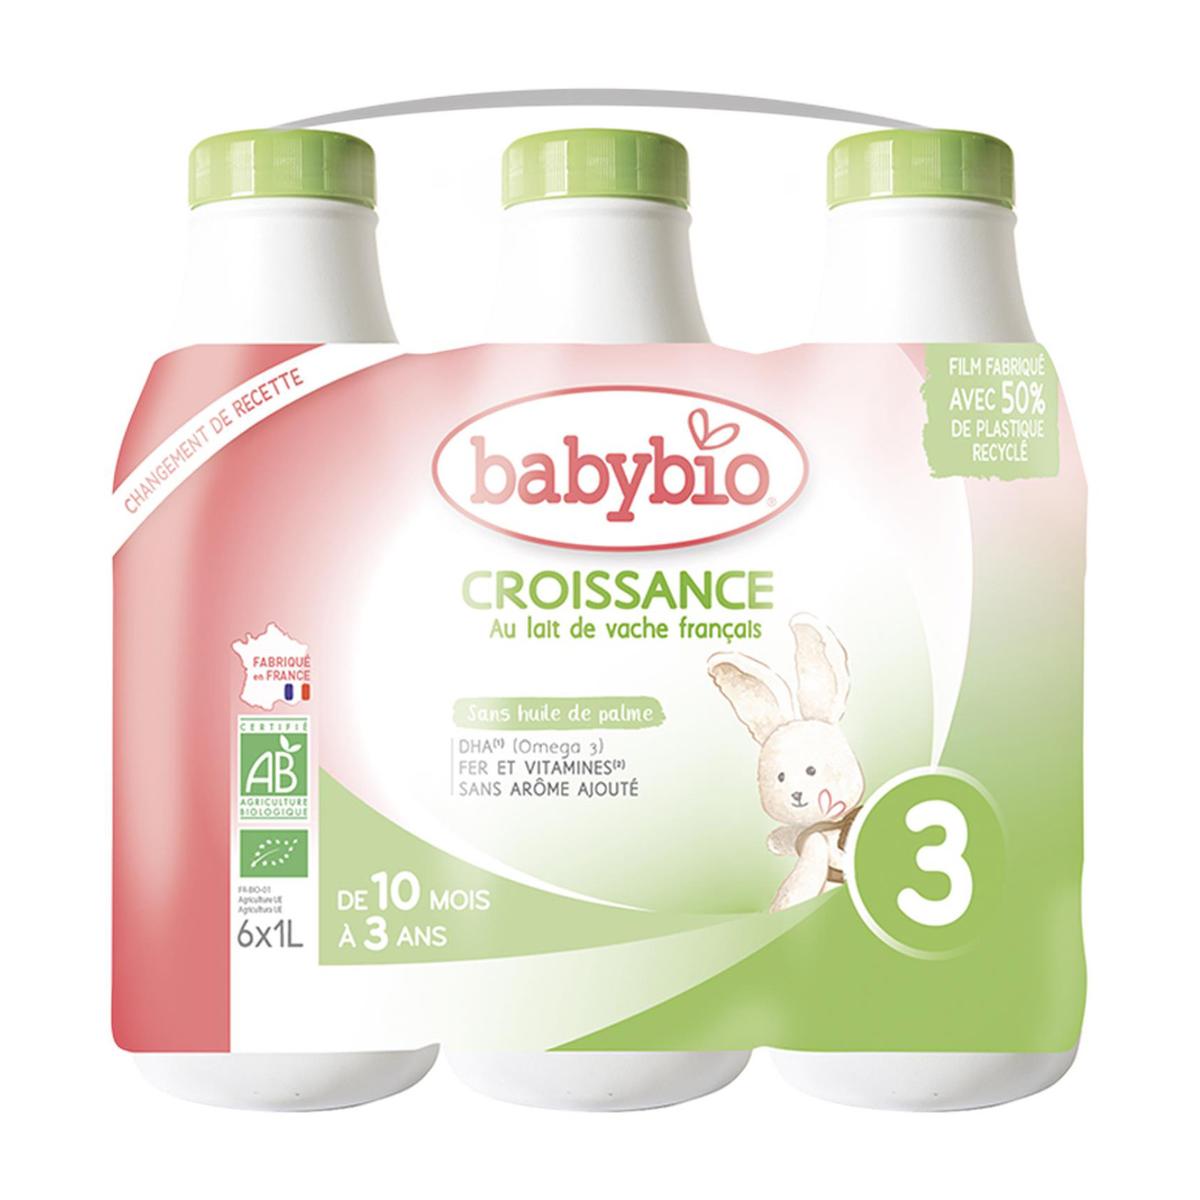 Achat Babybio Lait de Croissance Bio 3 Liquide Bébé Dès 10 Mois, 6x1L